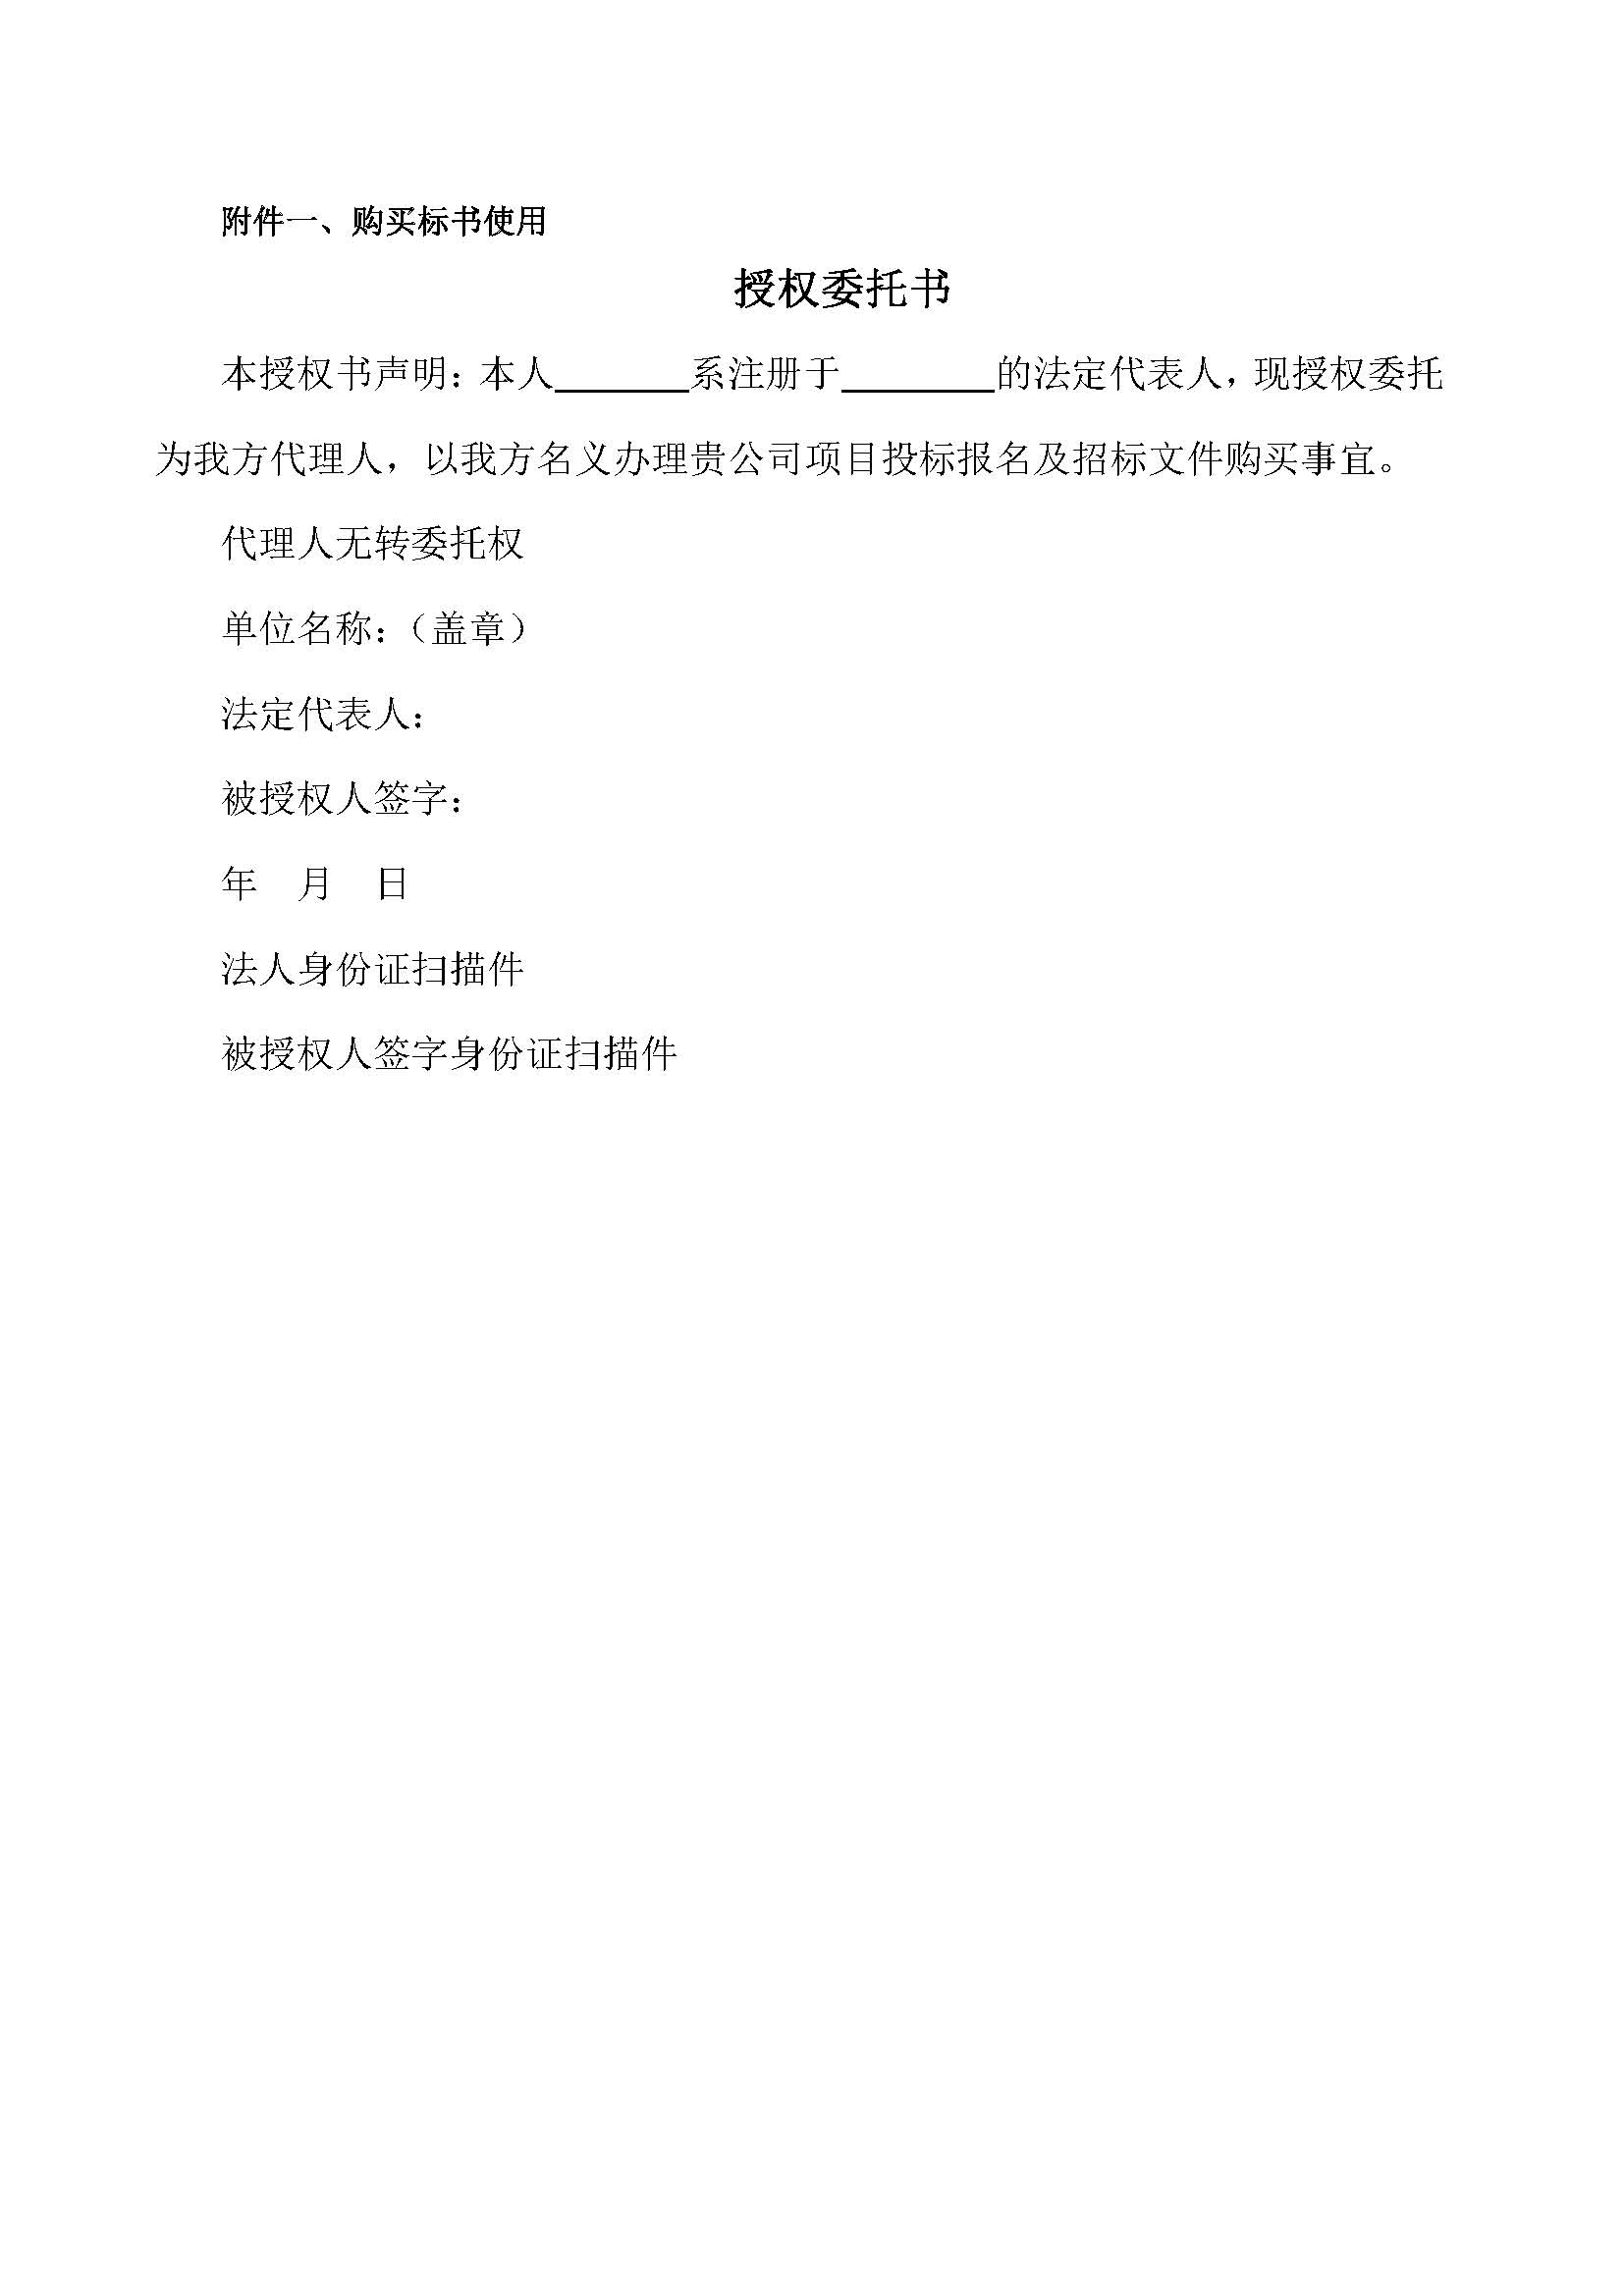 【招标公告】广州轨道交通十一号线工程项目_页面_4.jpg